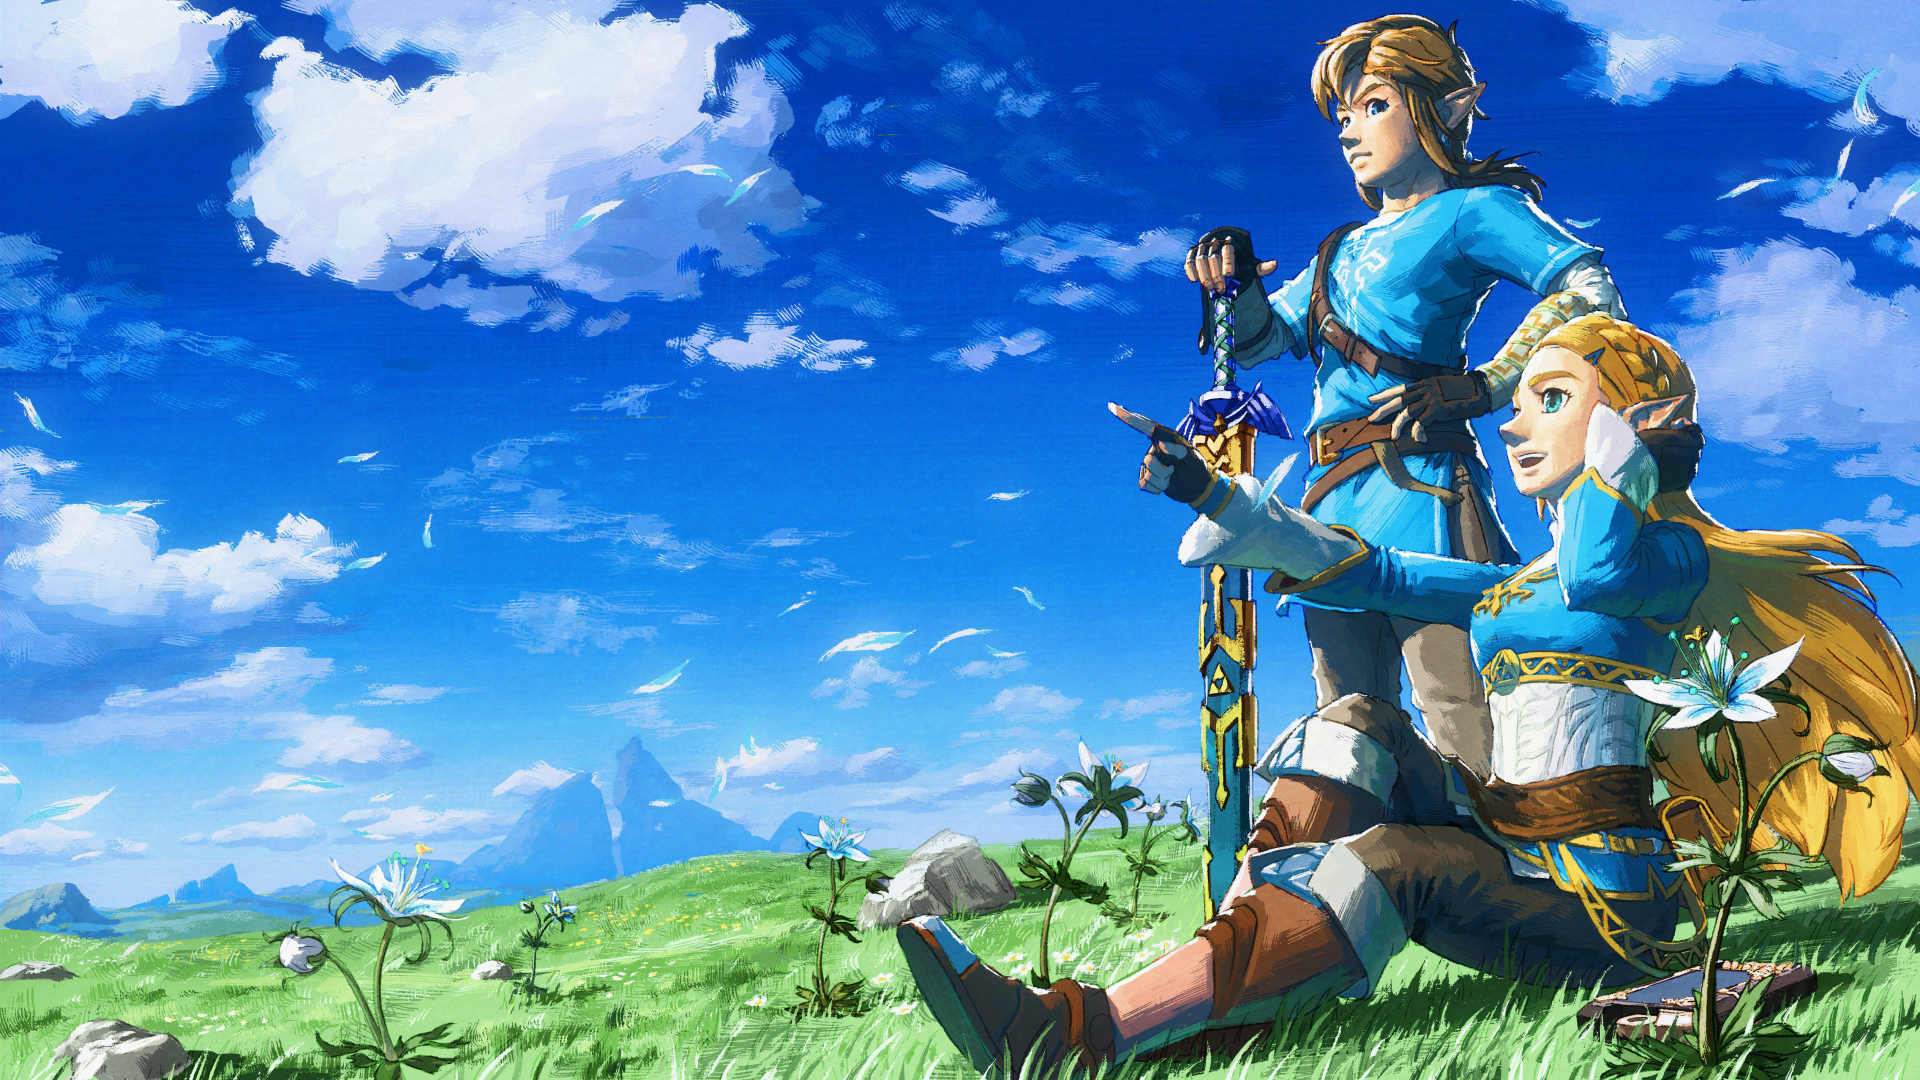 Zelda: Breath of the Wild continúa coronando tops de mejores juegos de la historia